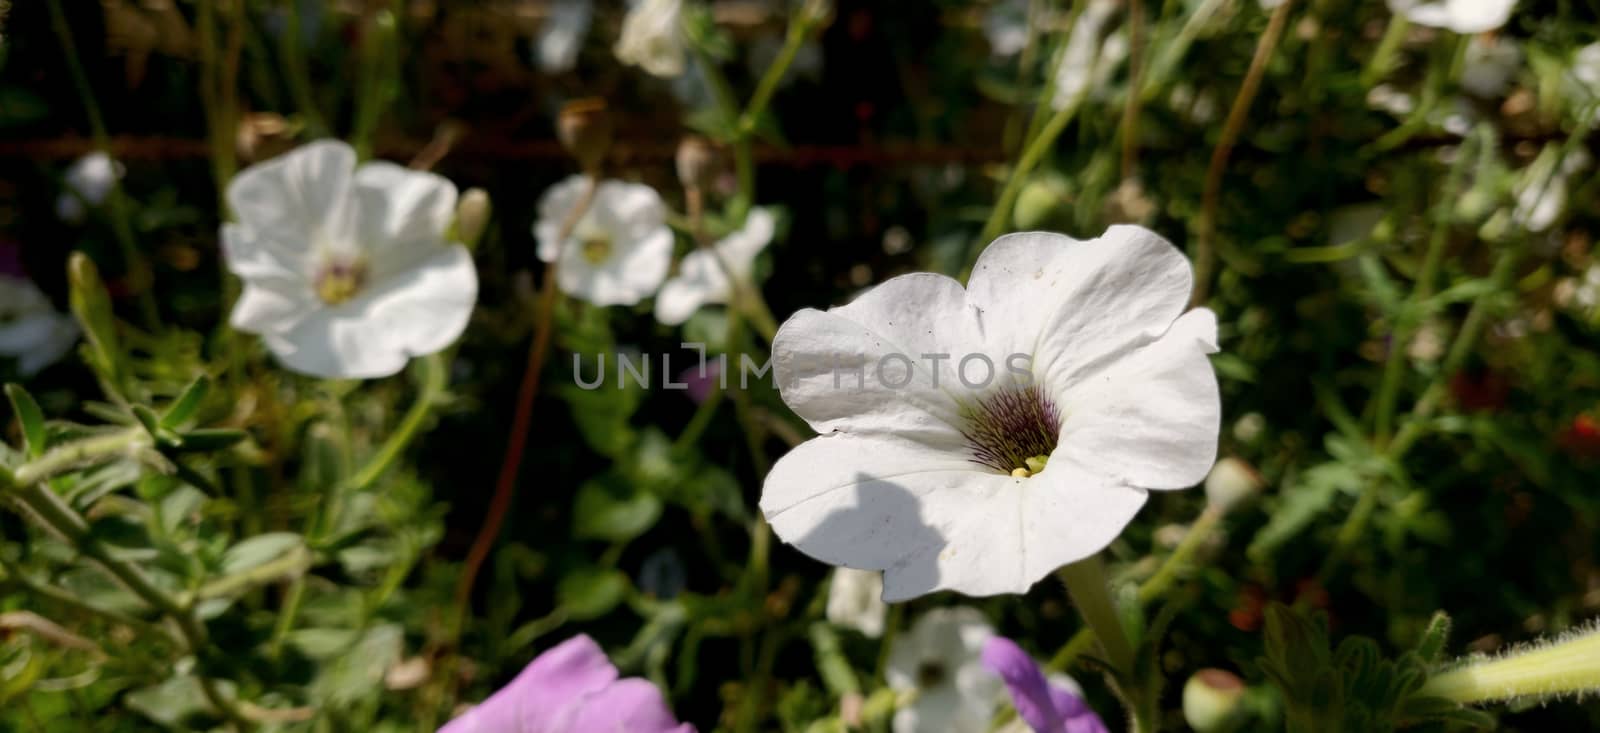 white flower in sunlight by mshivangi92